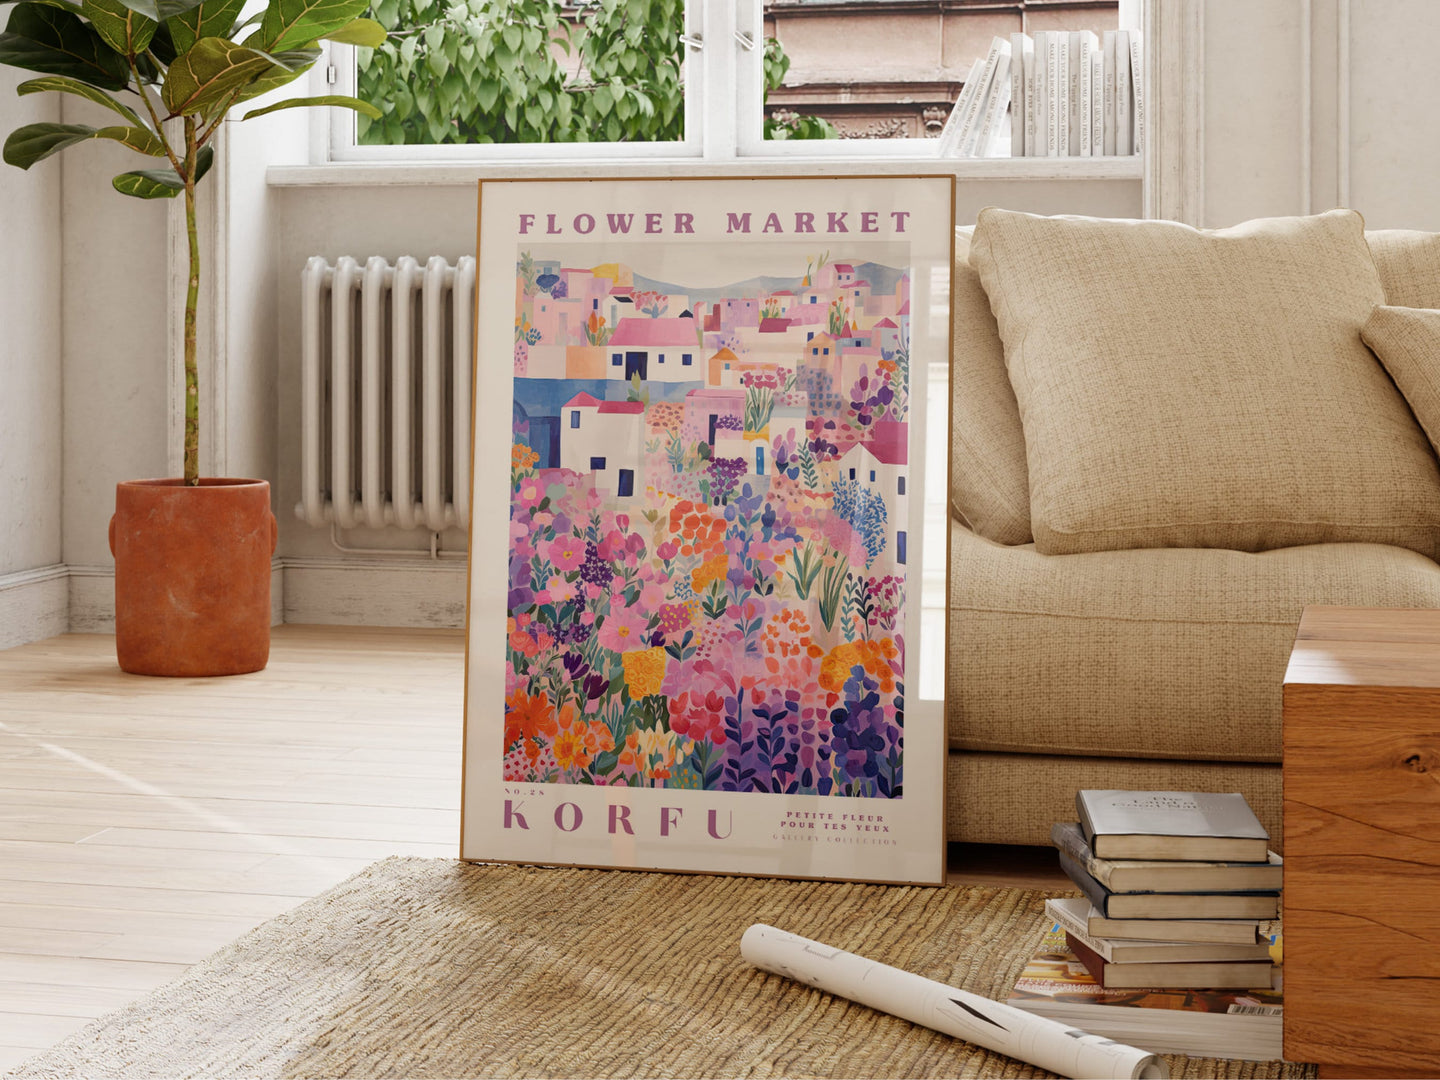 Korfu Flower Market Poster, GreeceTravel Art, Trendy Wall Art, Botanical Wall Art, Floral Decor Posters, Purpleand Pink Flower Art, 70x100